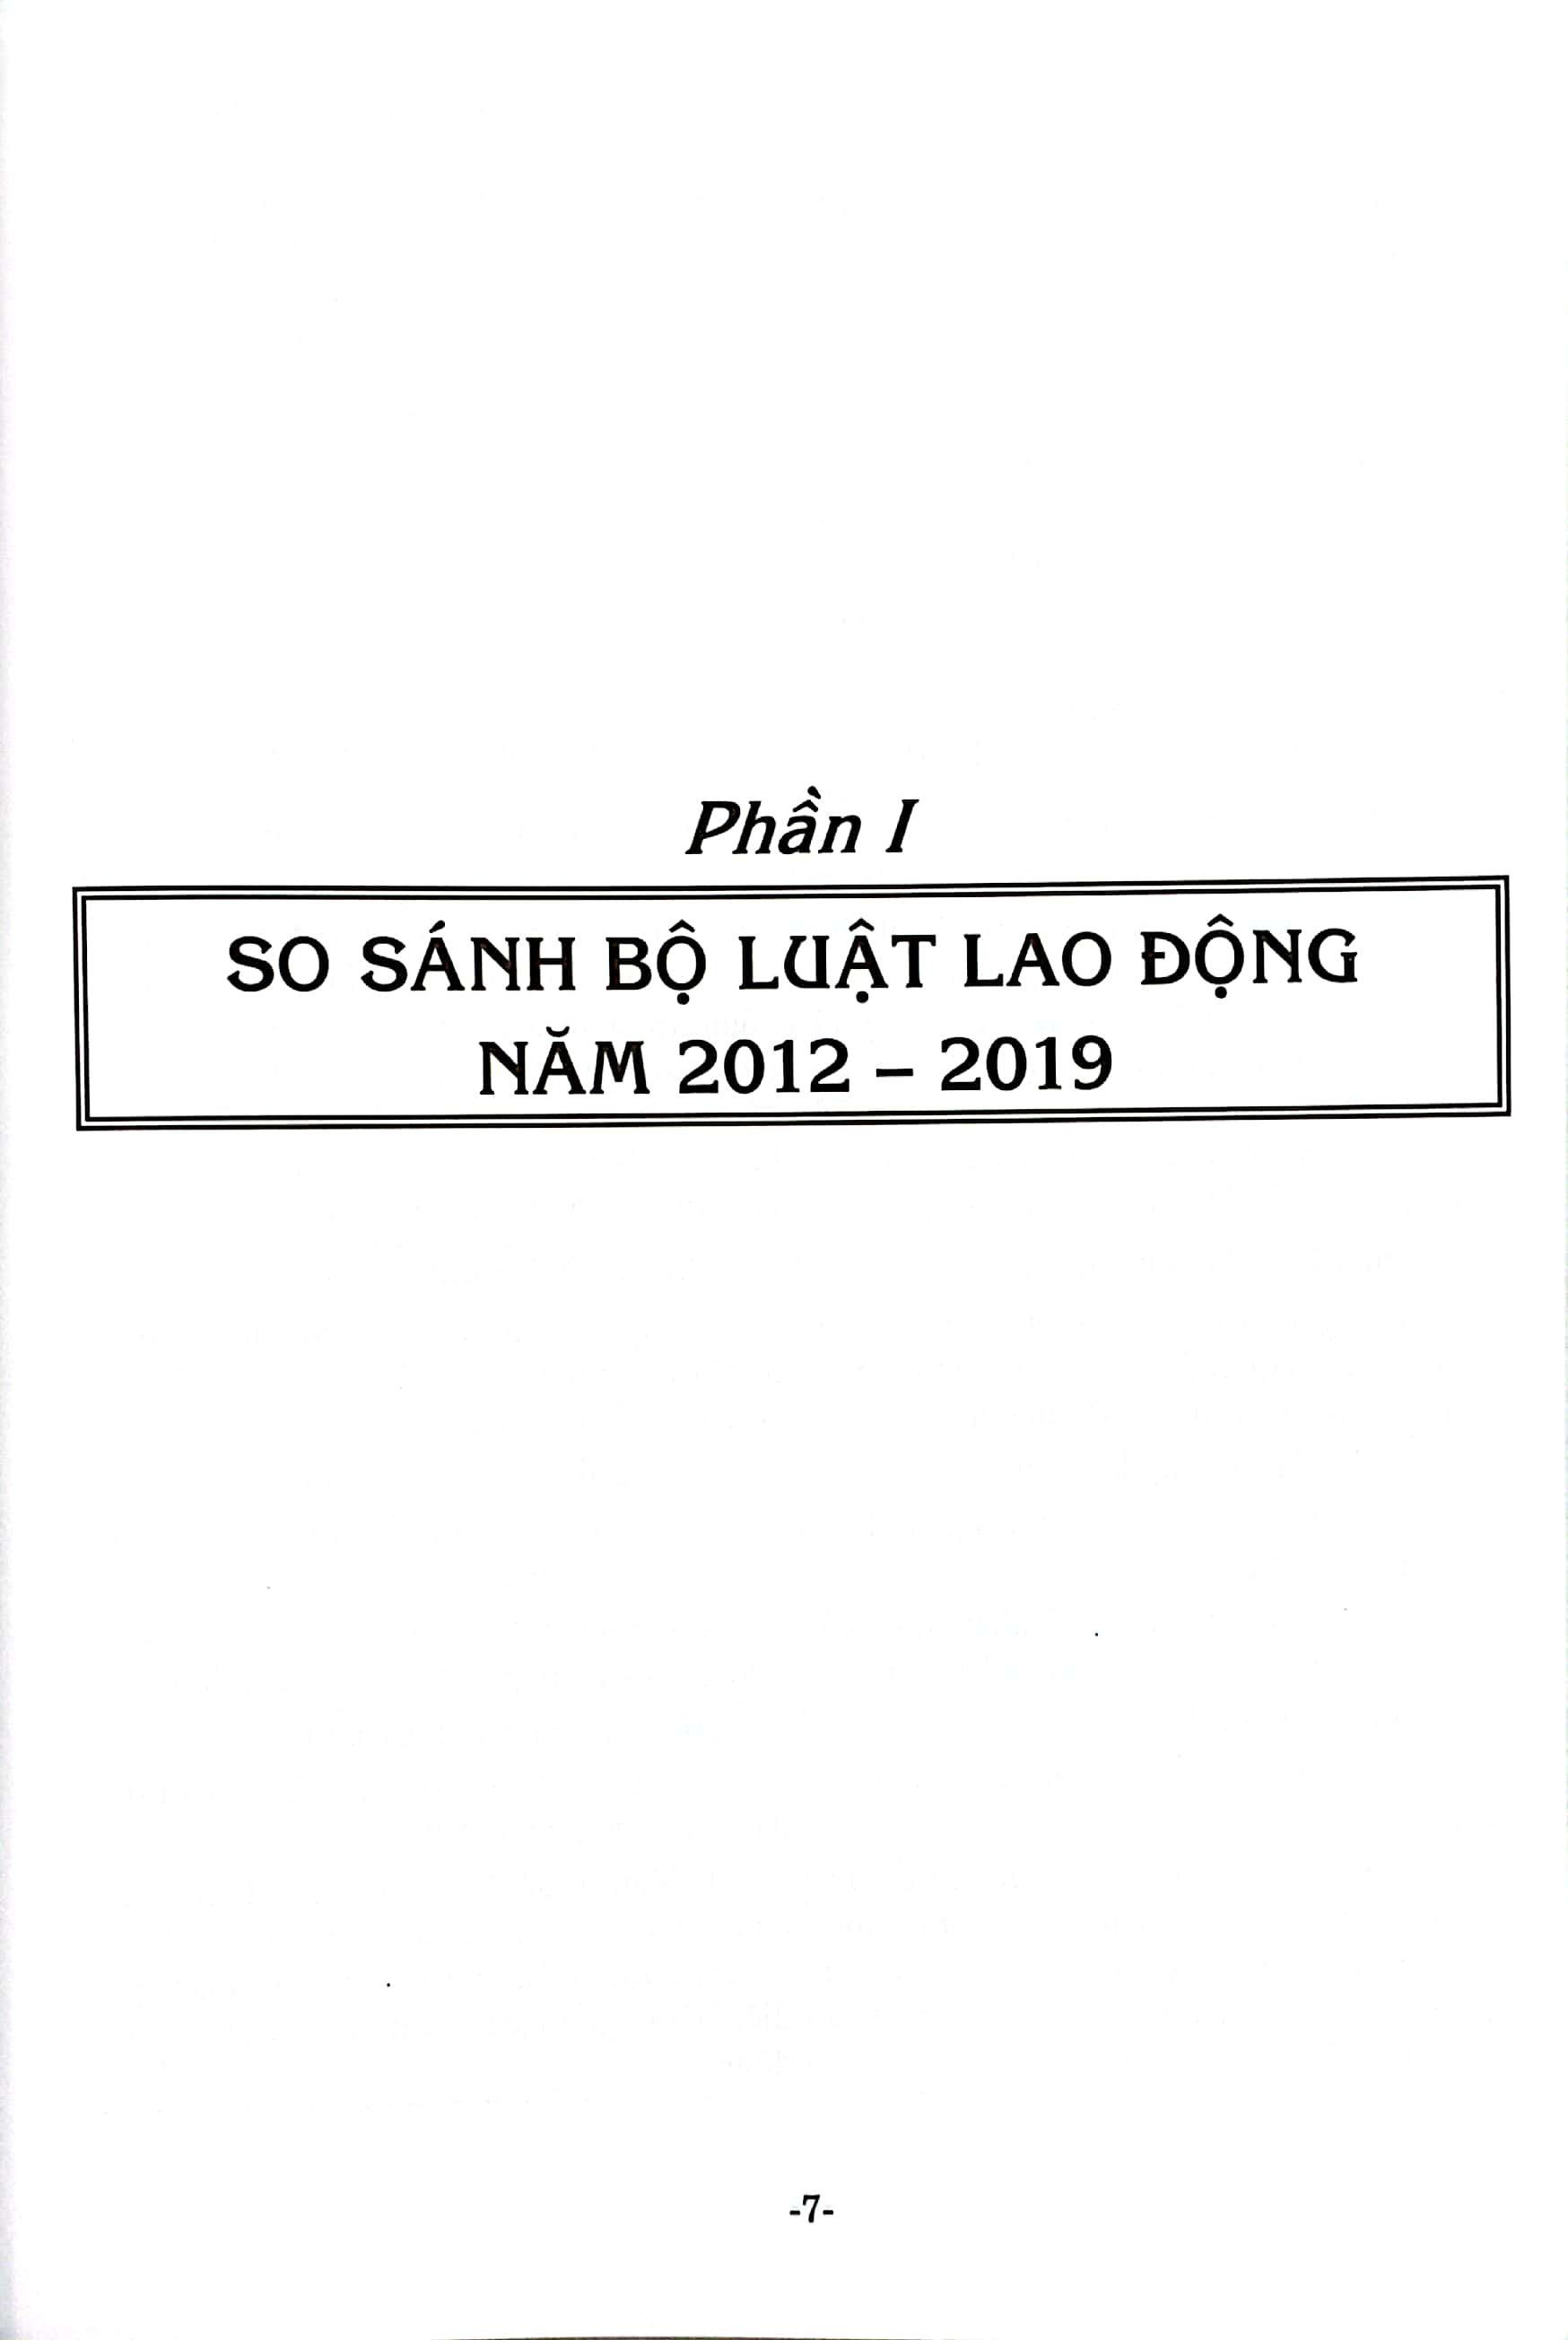 So Sánh Bộ Luật Lao Động Năm 2012-2019 Và Các Văn Bản Hướng Dẫn Thi Hành PDF